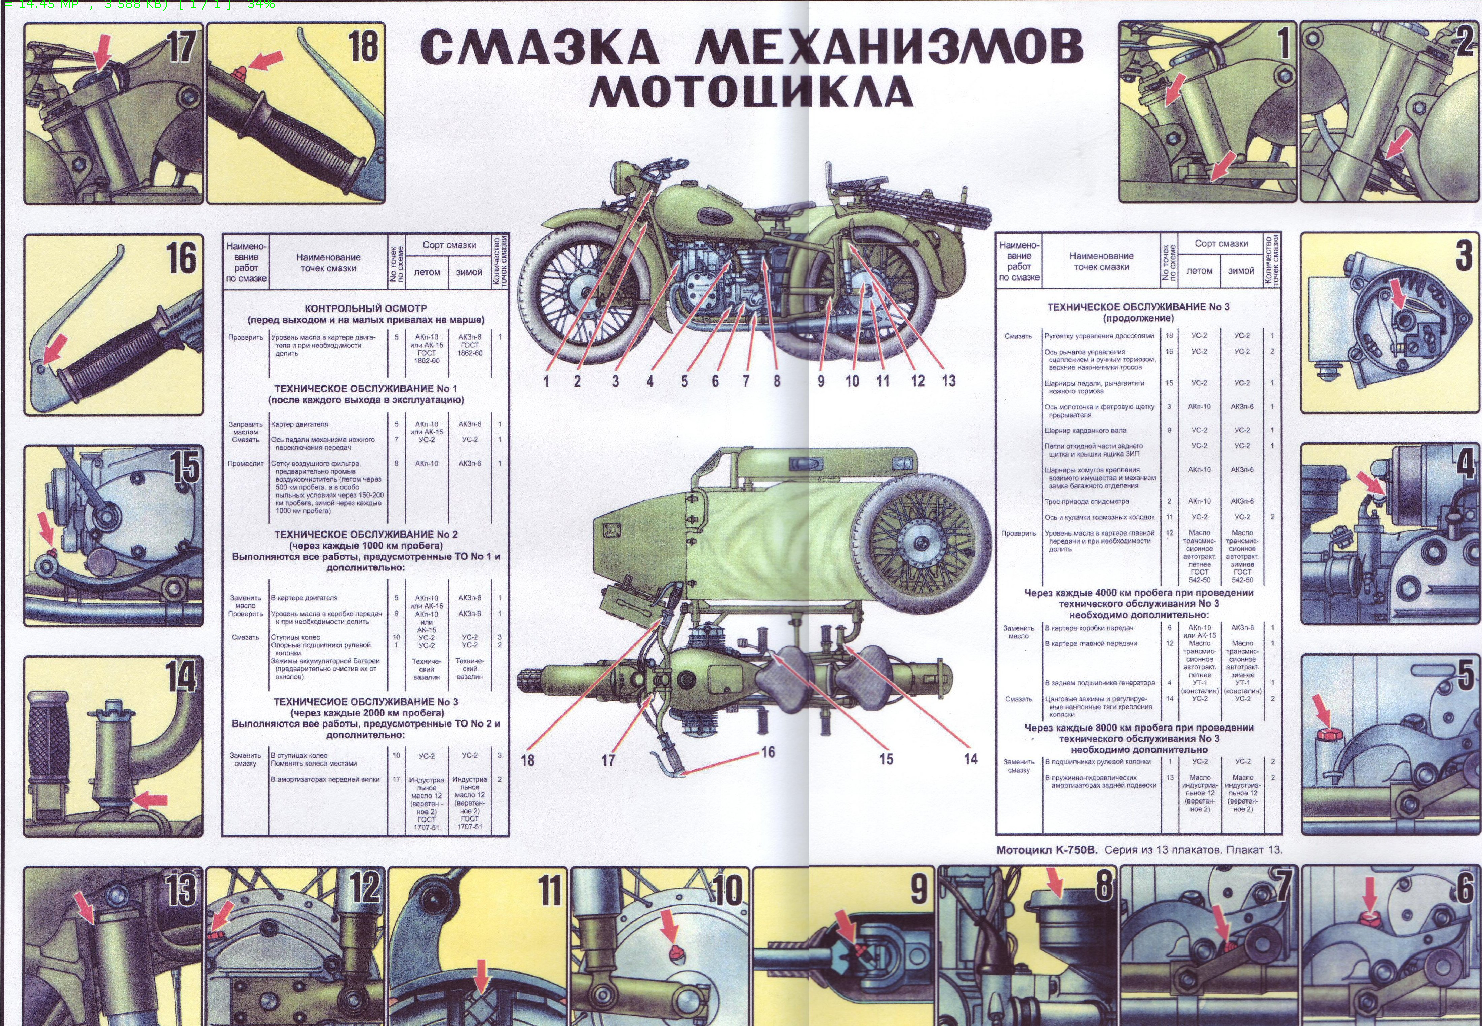 К-750В. Плакат 13. Смазка механизмов мотоцикла.jpg